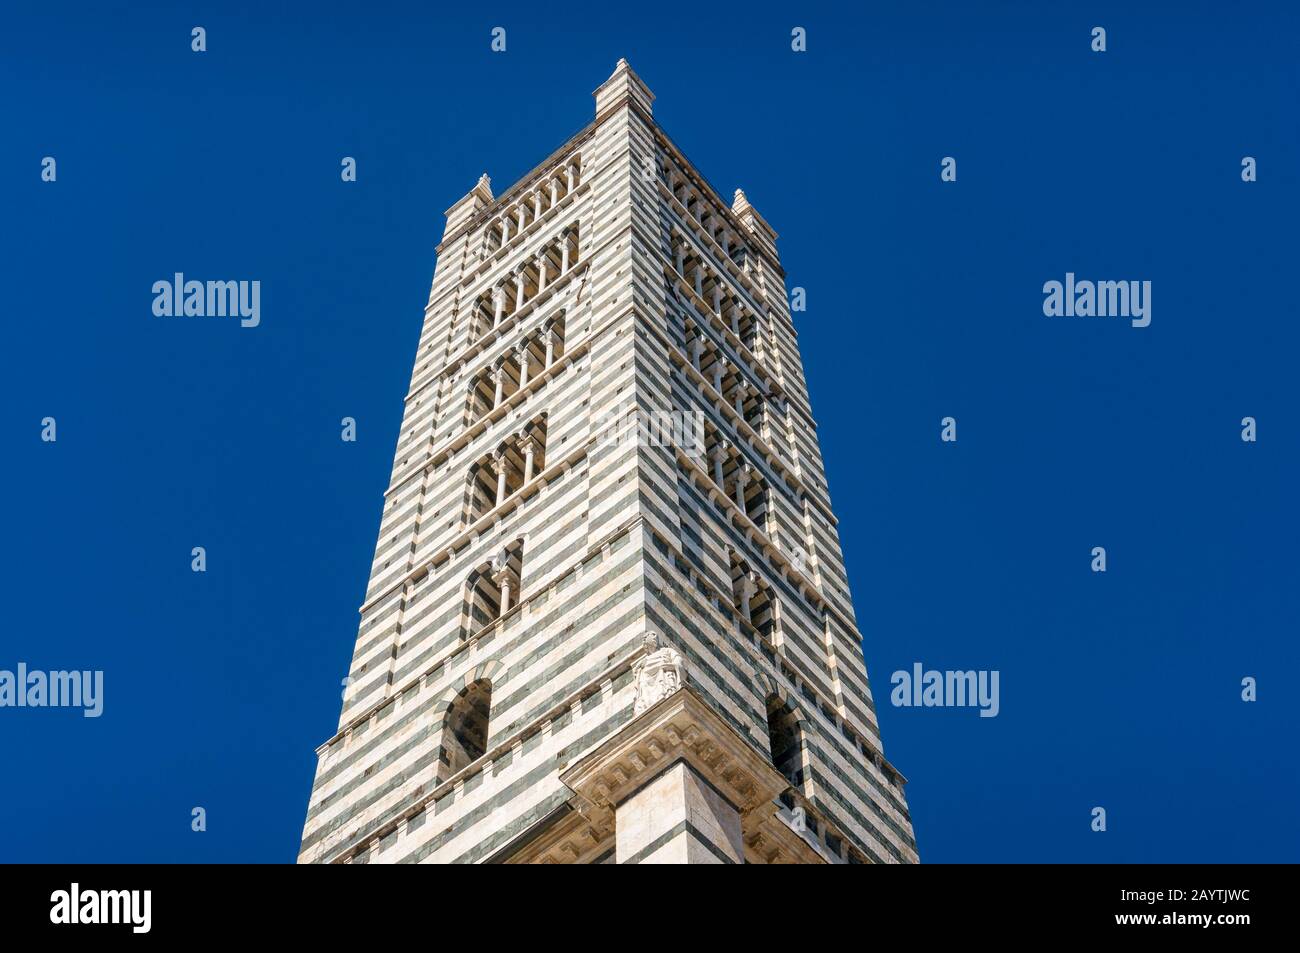 Architektonische Details Hintergrund des Turms, der Campanilla des Doms von Siena oder des Duomo von Siena. Berühmte Orte in Italien Stockfoto